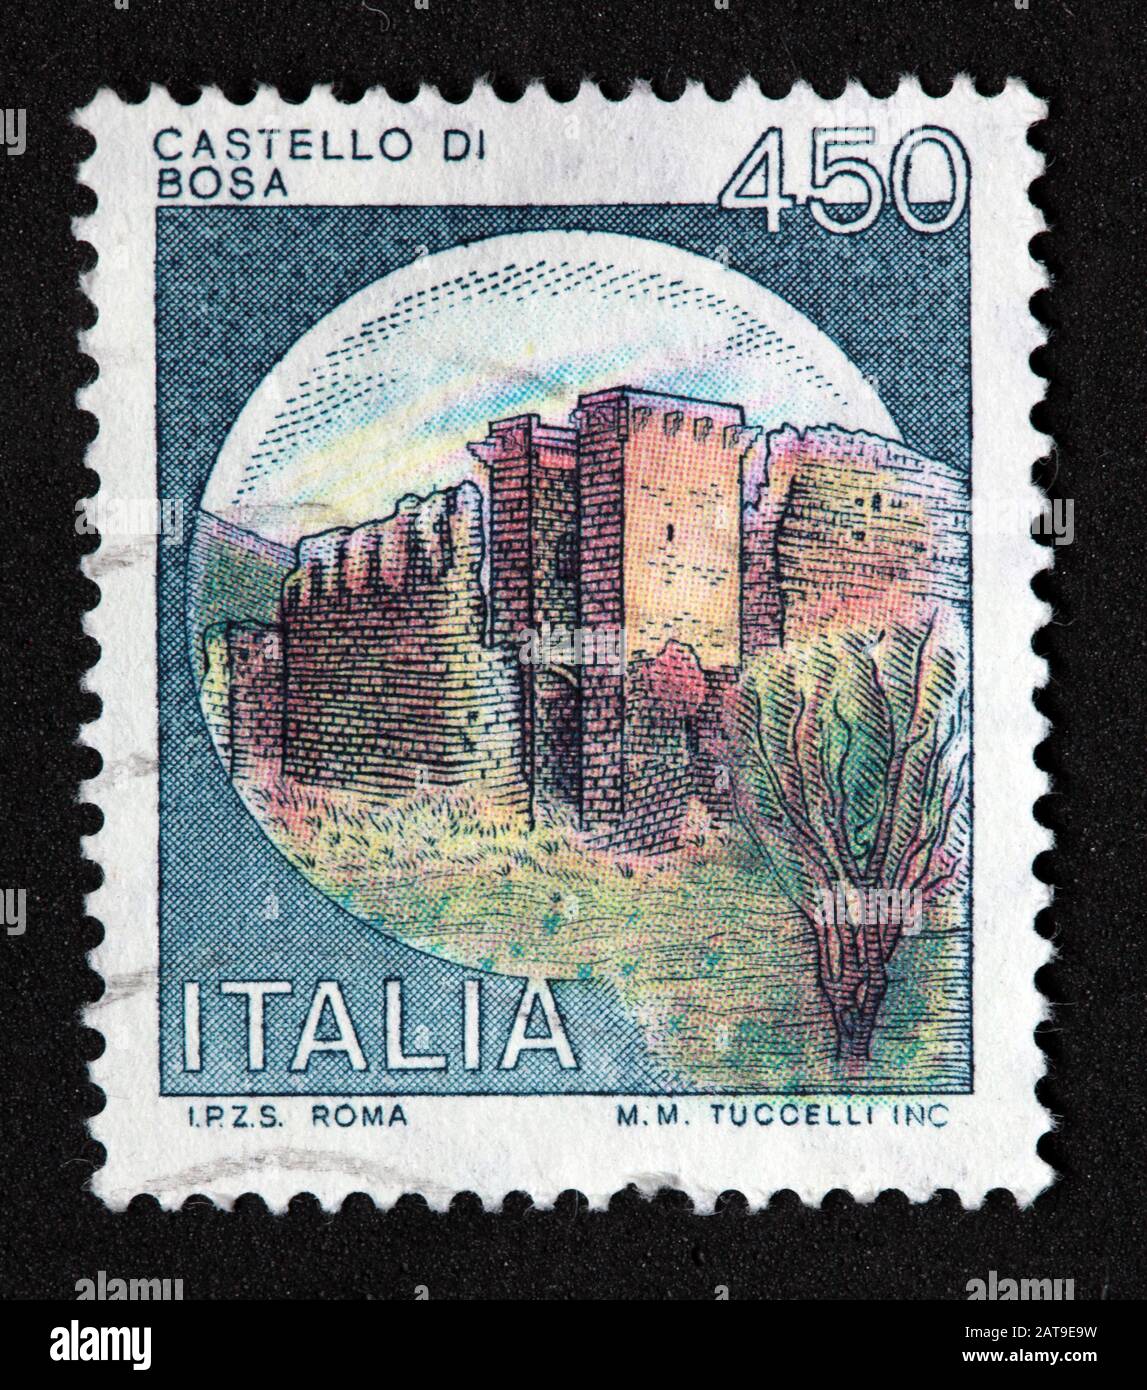 Francobollo italiano, poste Italia usato e affrancato, castelli d'Italia, Italia Costello di Bosa, 450lire M.M.Tuccelli Inc Roma Foto Stock